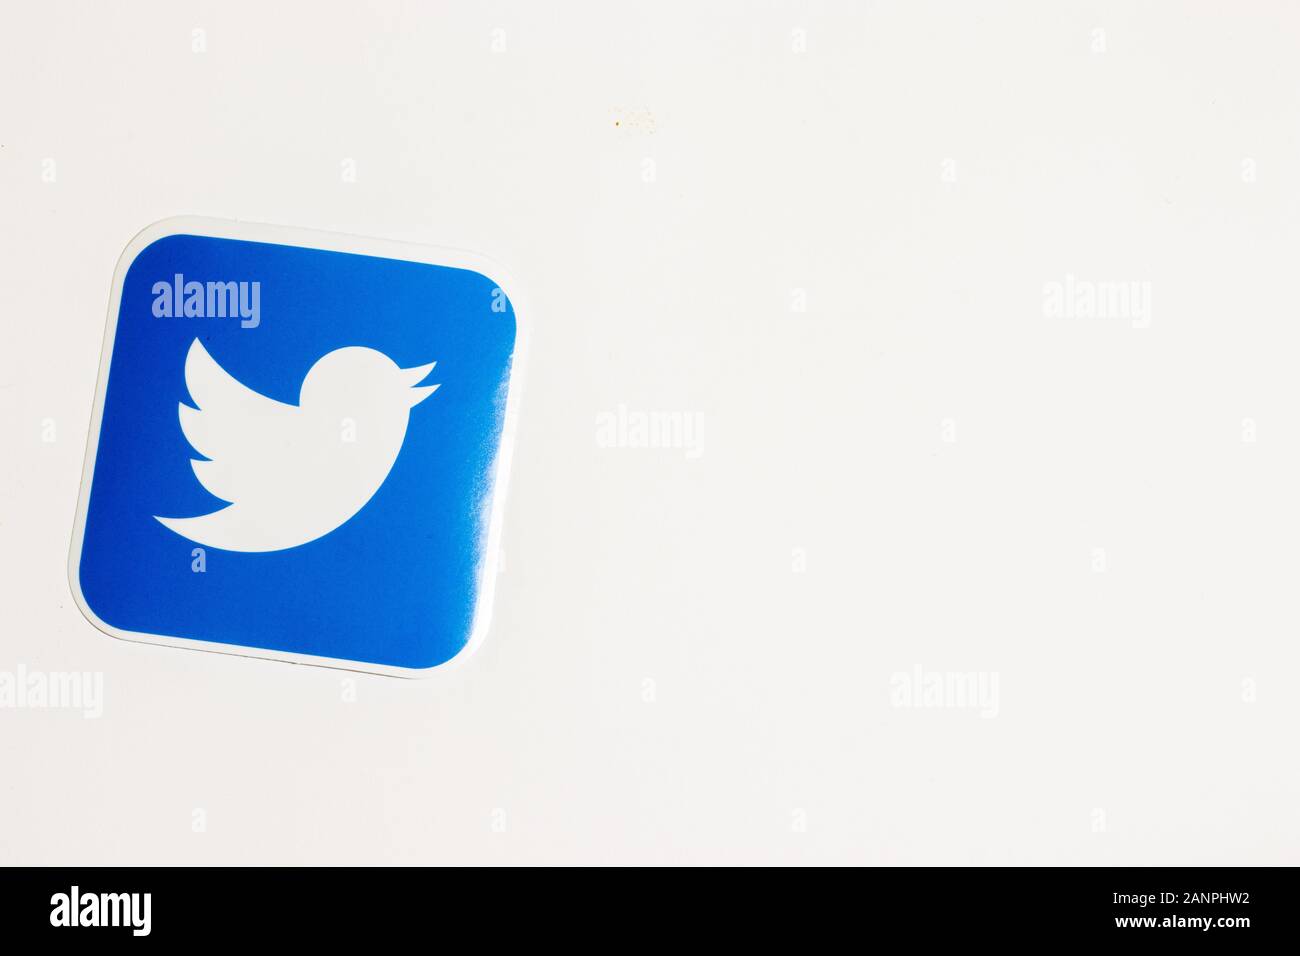 Los Angeles, Californie, États-Unis - 17 janvier 2020: Logo Twitter sur fond blanc avec espace de copie. Icône des médias sociaux, éditorial illustratif Banque D'Images